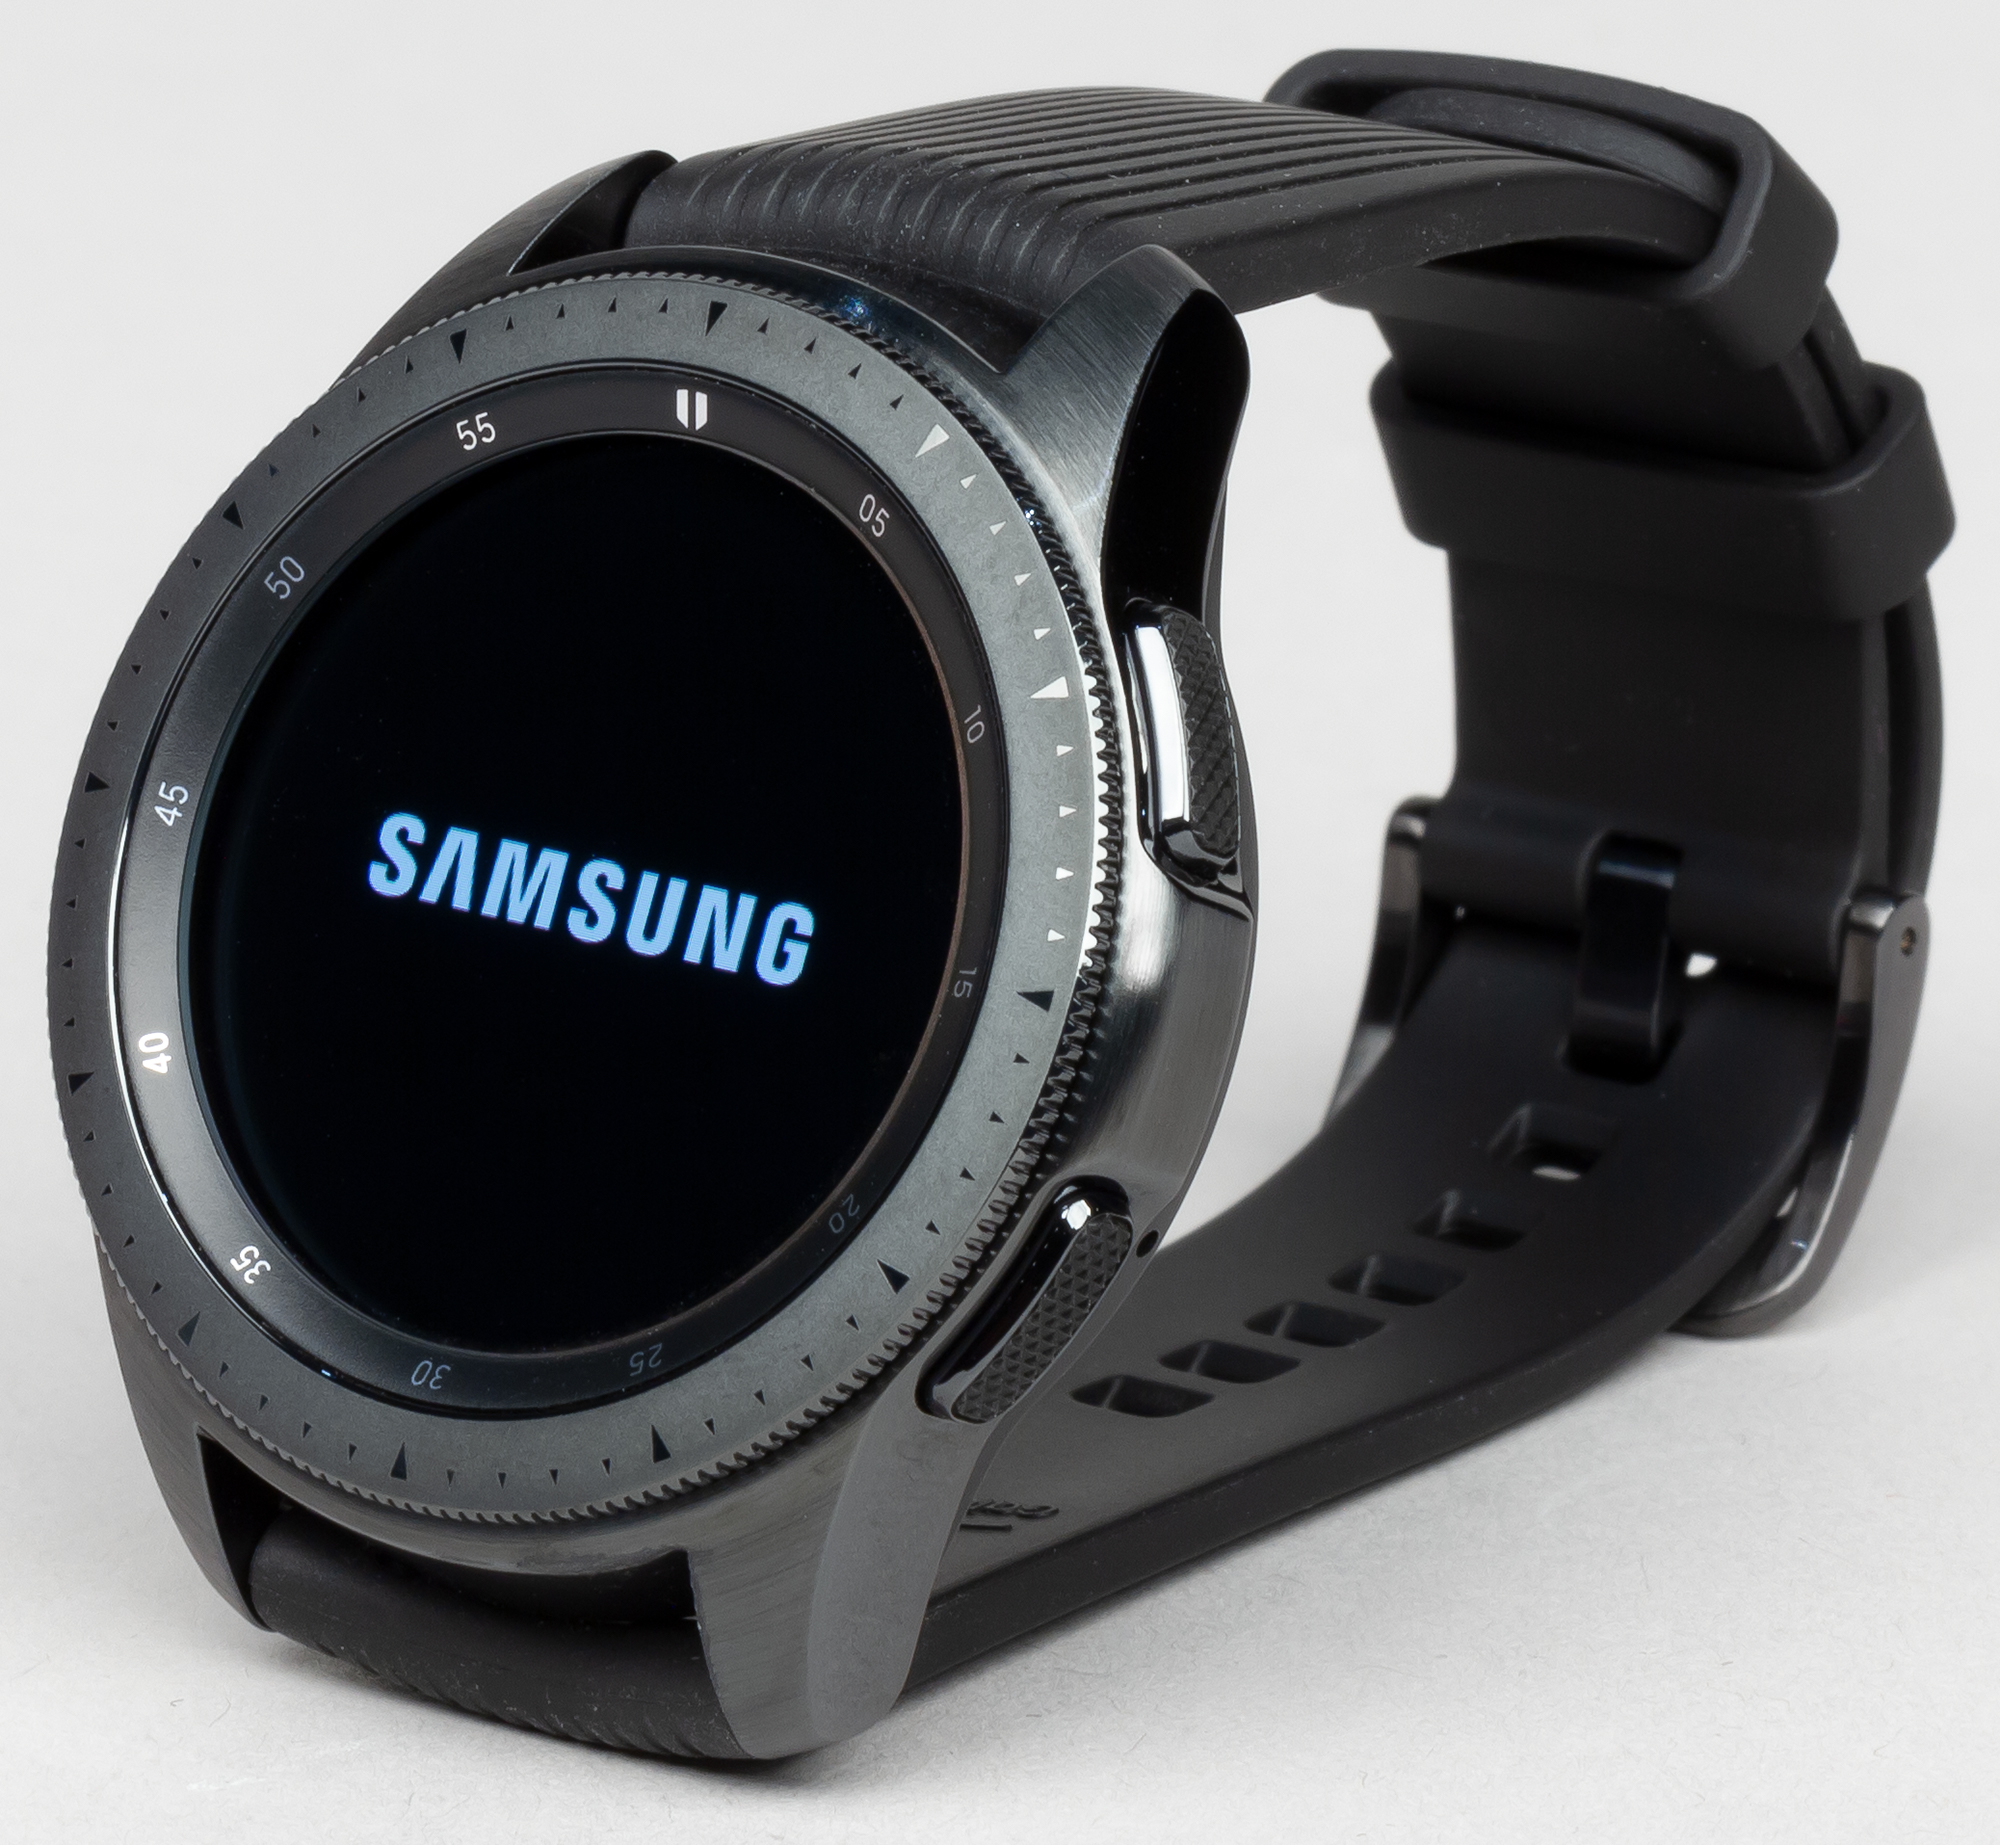 Часы самсунг 1. Samsung Galaxy watch 42mm. Samsung Galaxy watch 42мм. Часы Samsung Galaxy watch 42mm. Samsung Galaxy watch 42mm Black.